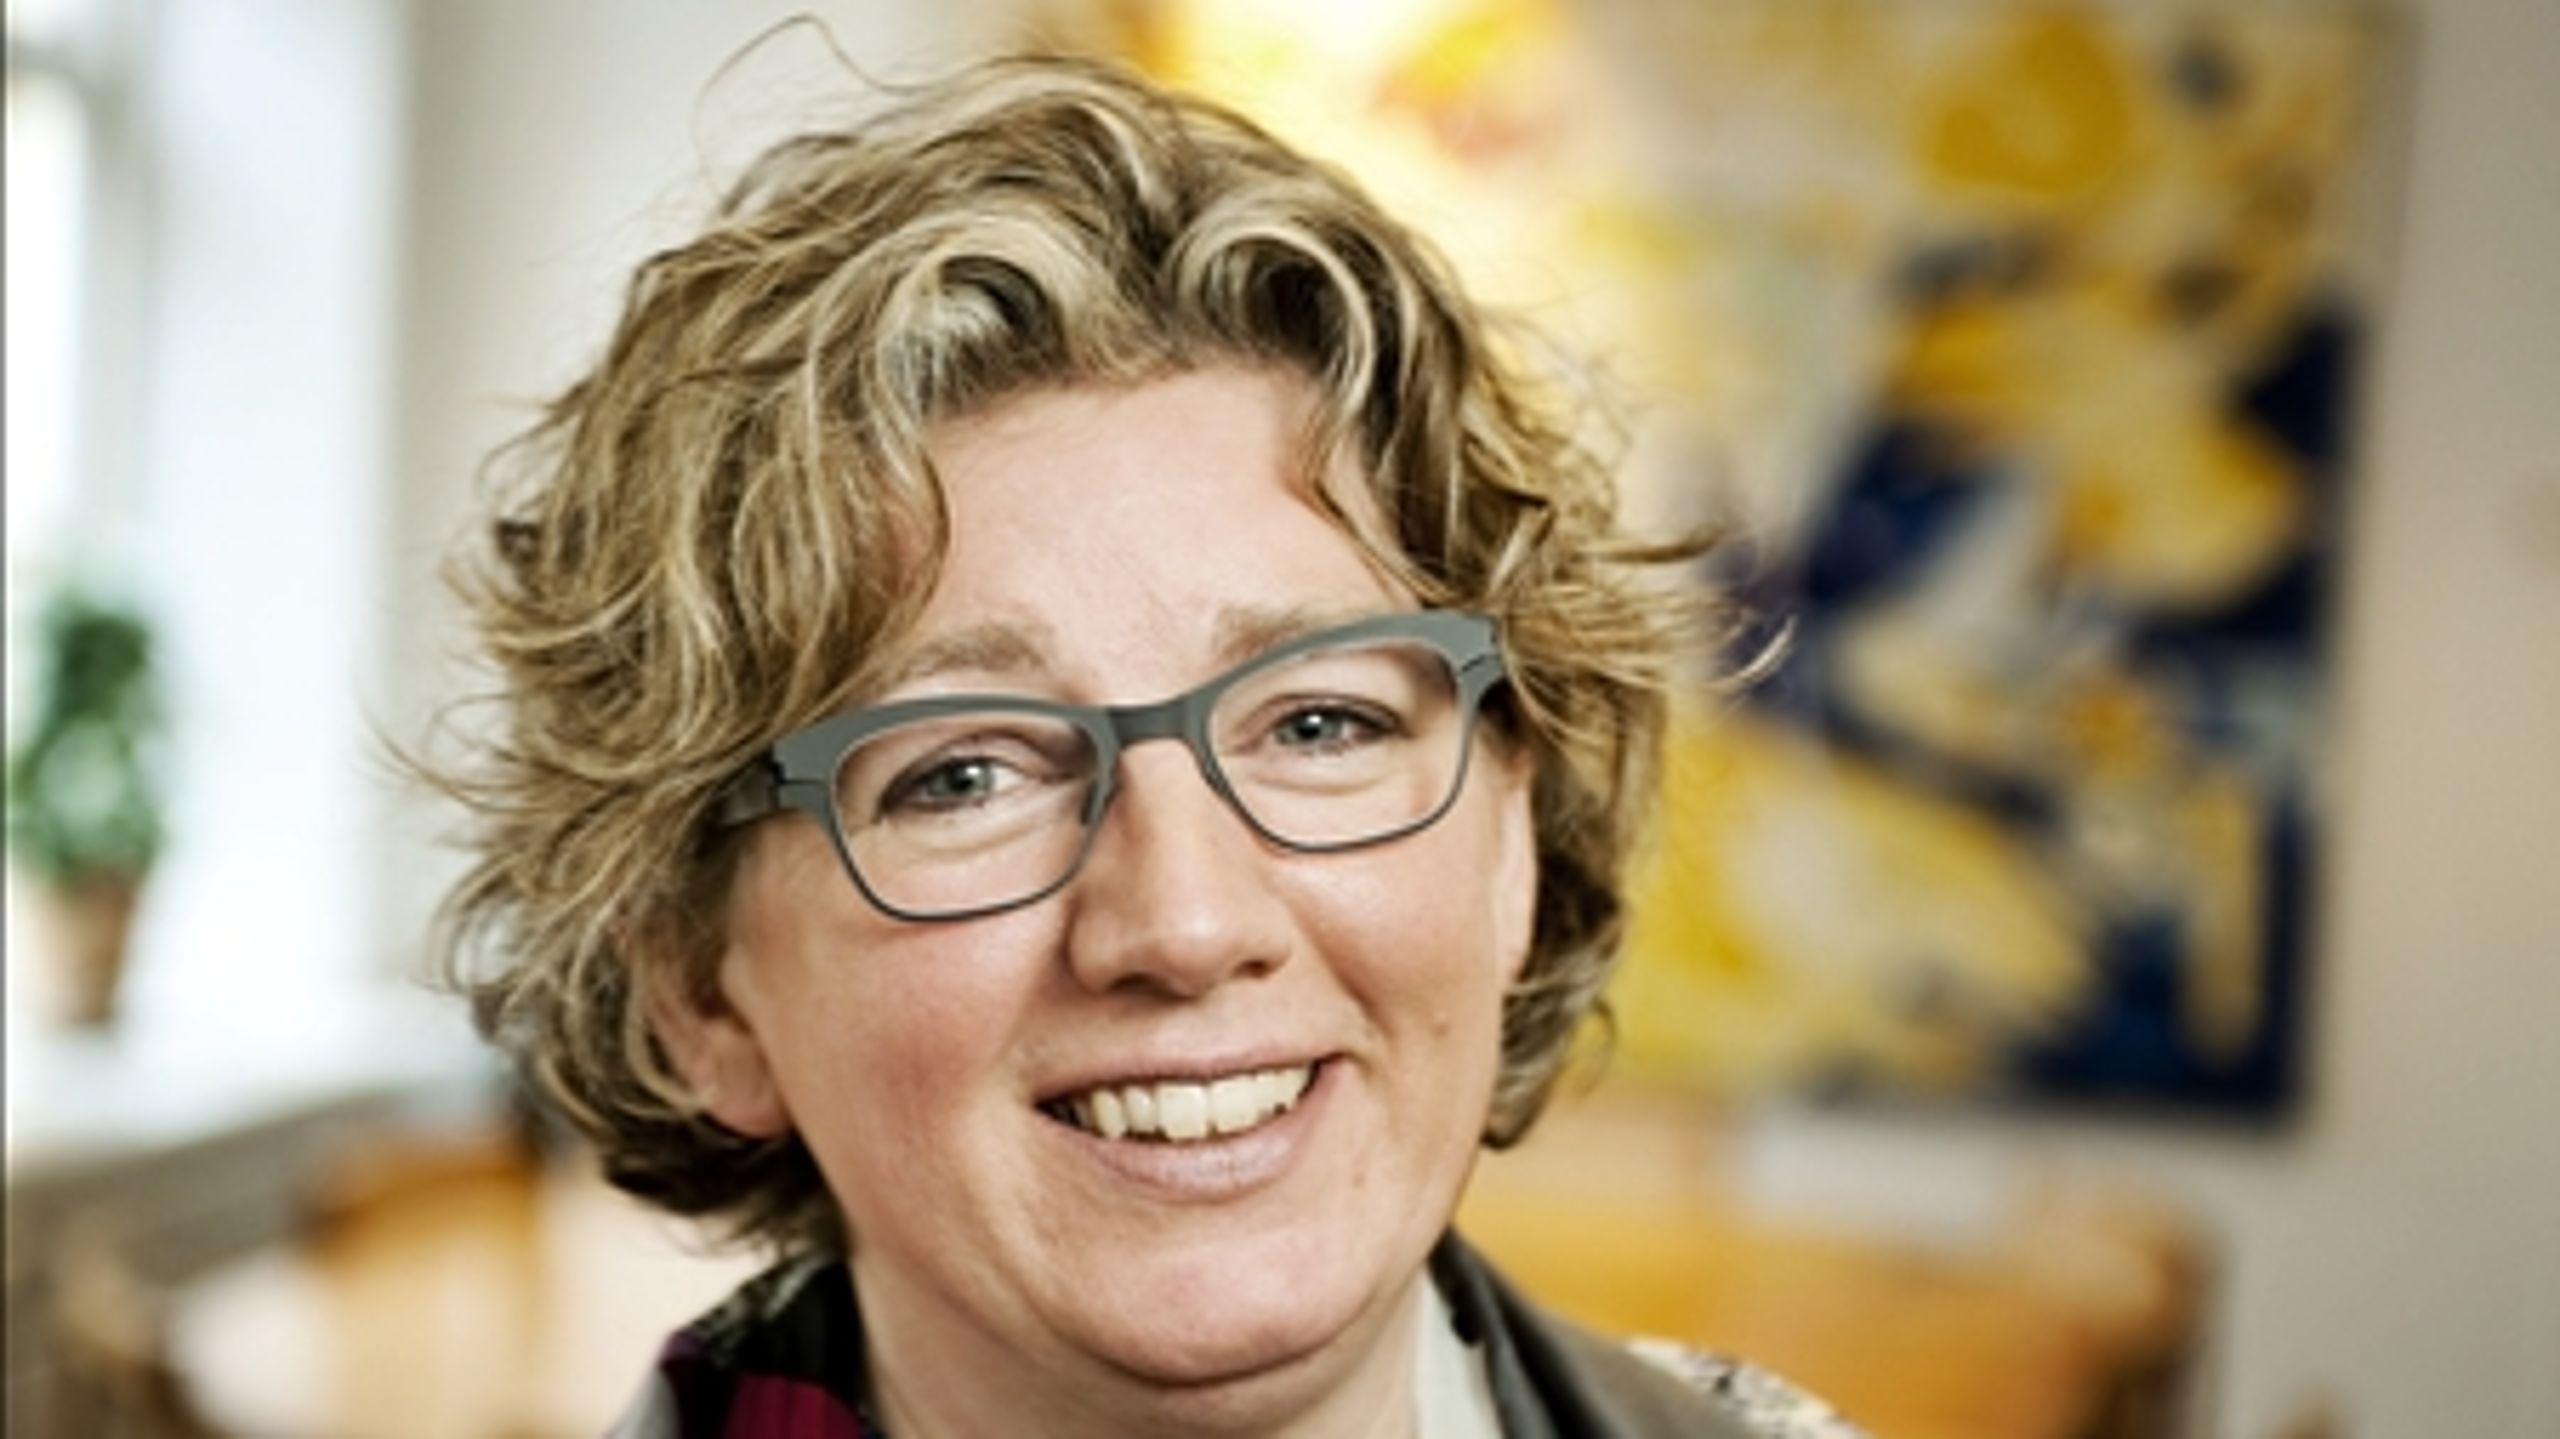 Den nye videnskabsminister, Charlotte Sahl-Madsen (K), foretr&#230;kkes frem for Helge Sander (V) af et klart flertal af v&#230;lgerne i en ny m&#229;ling.